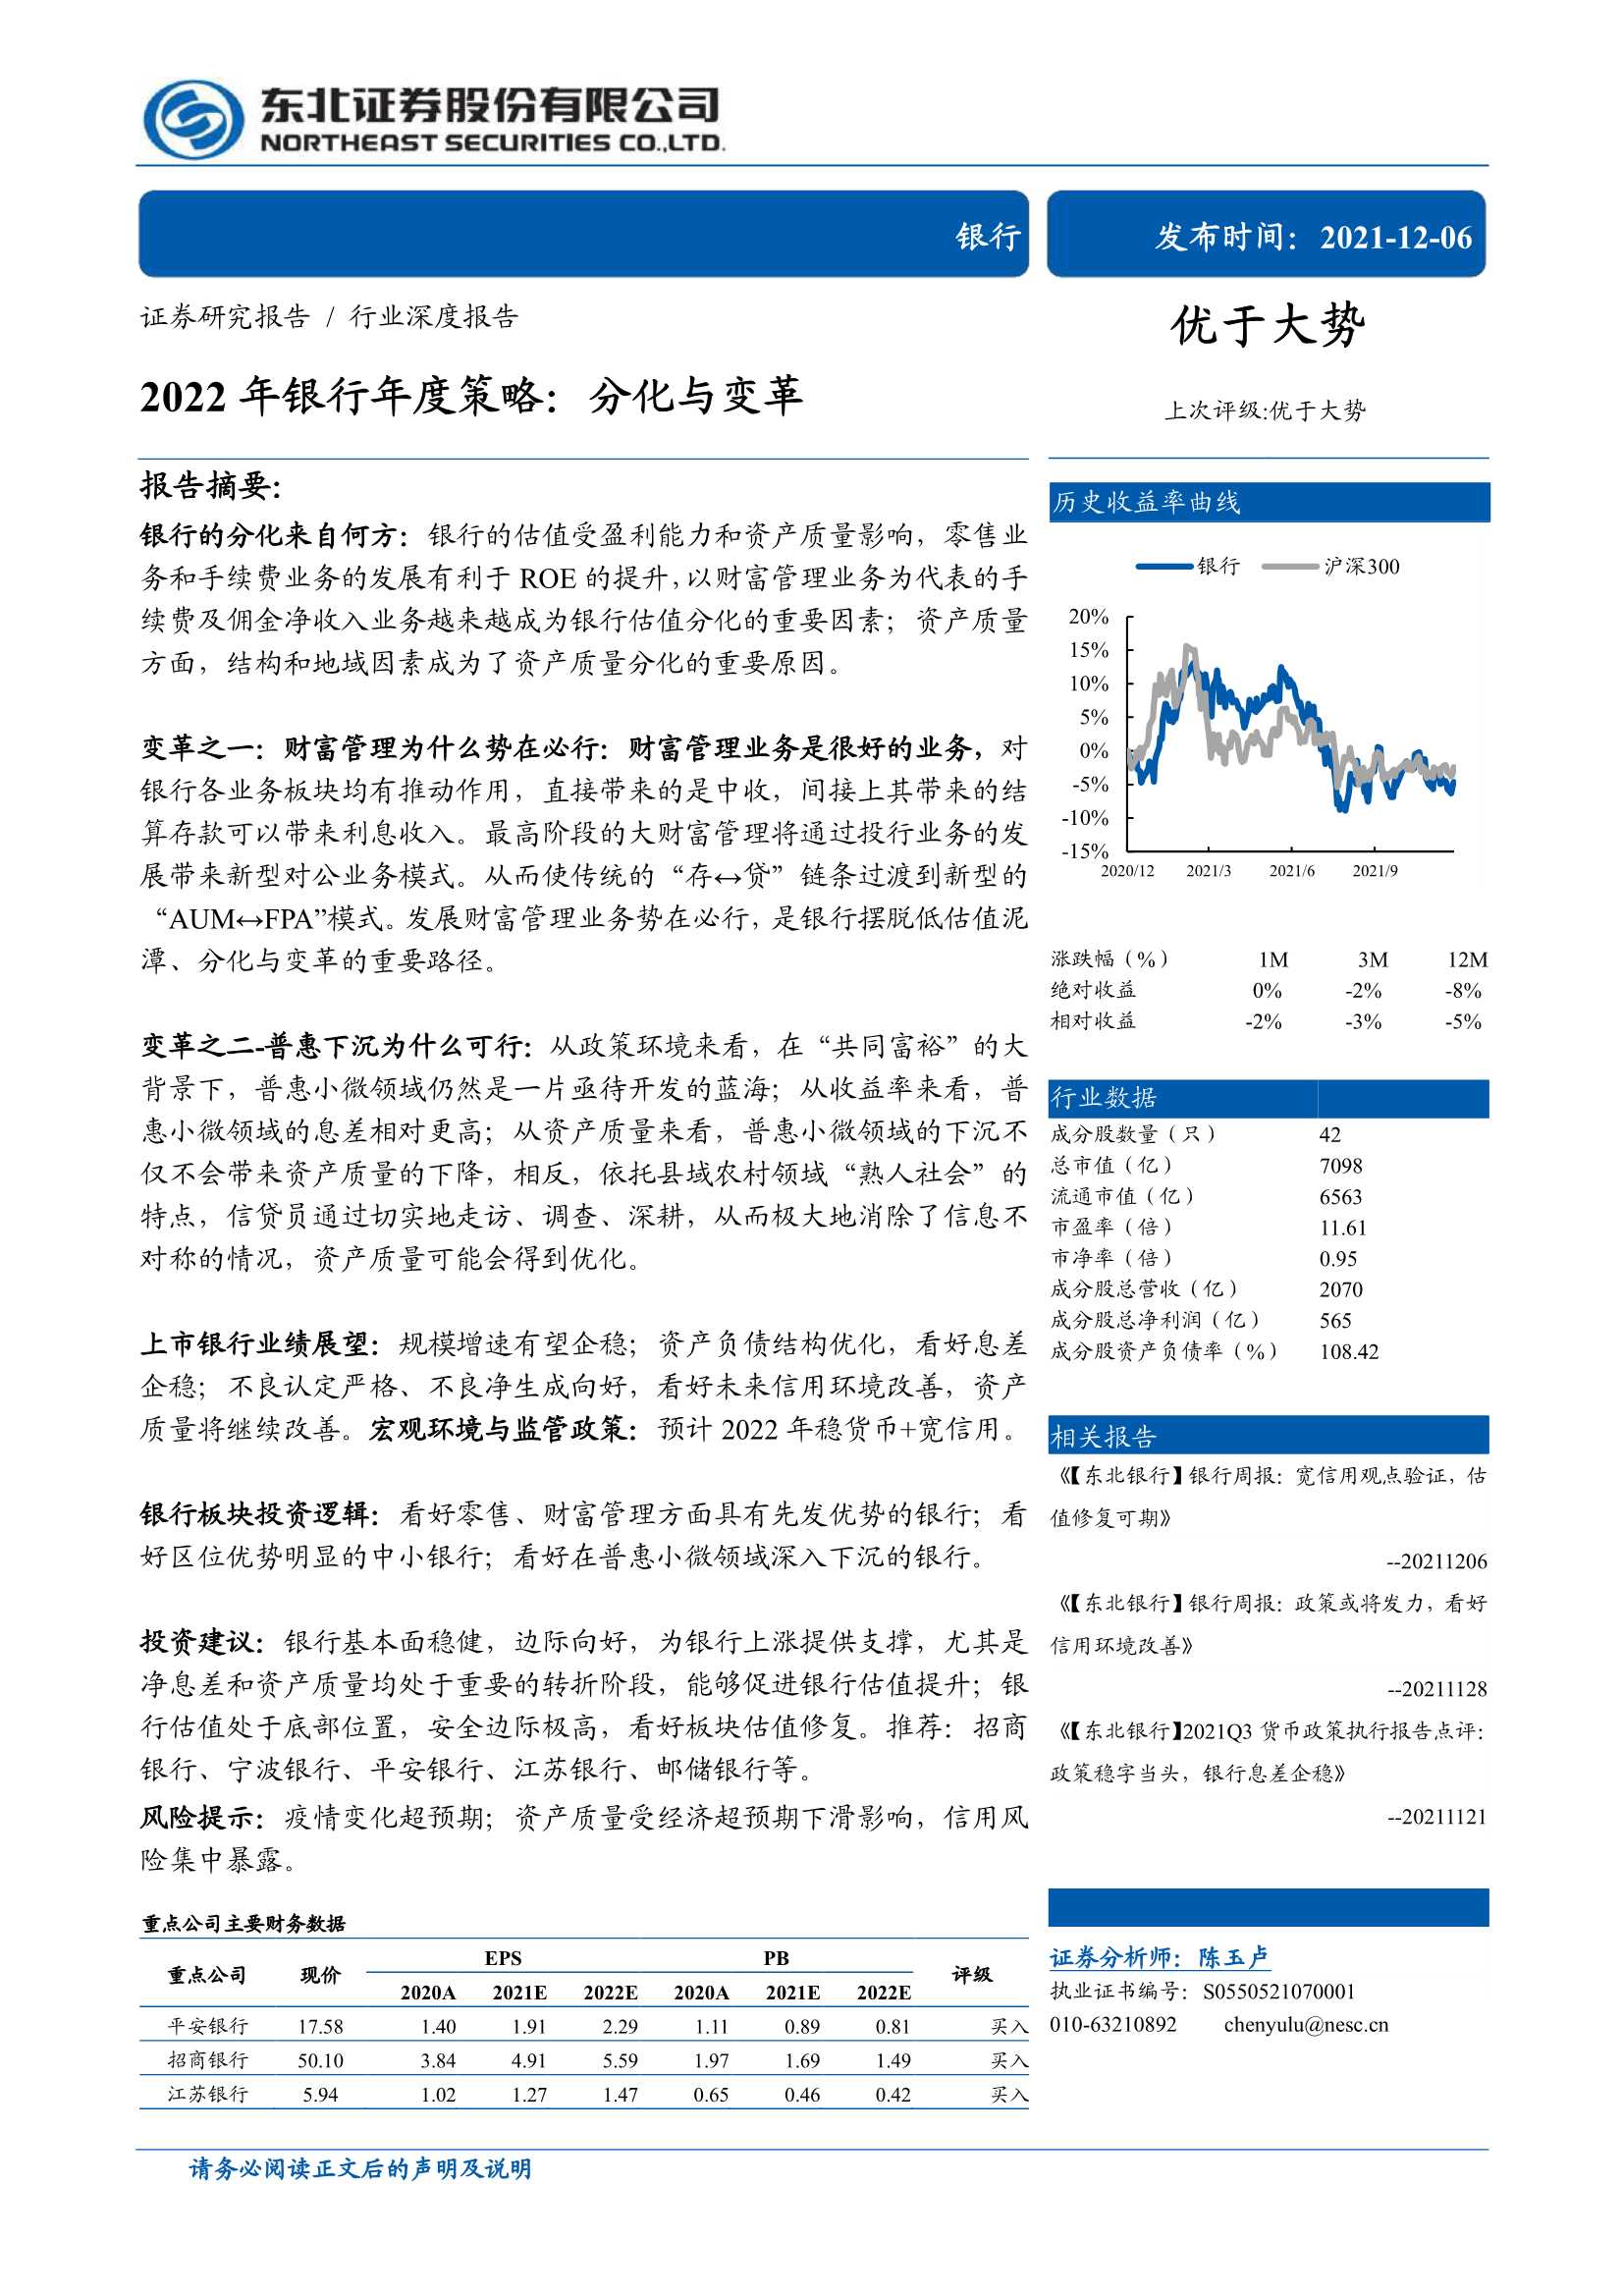 东北证券-2022年银行业年度策略：分化与变革-20211206-31页